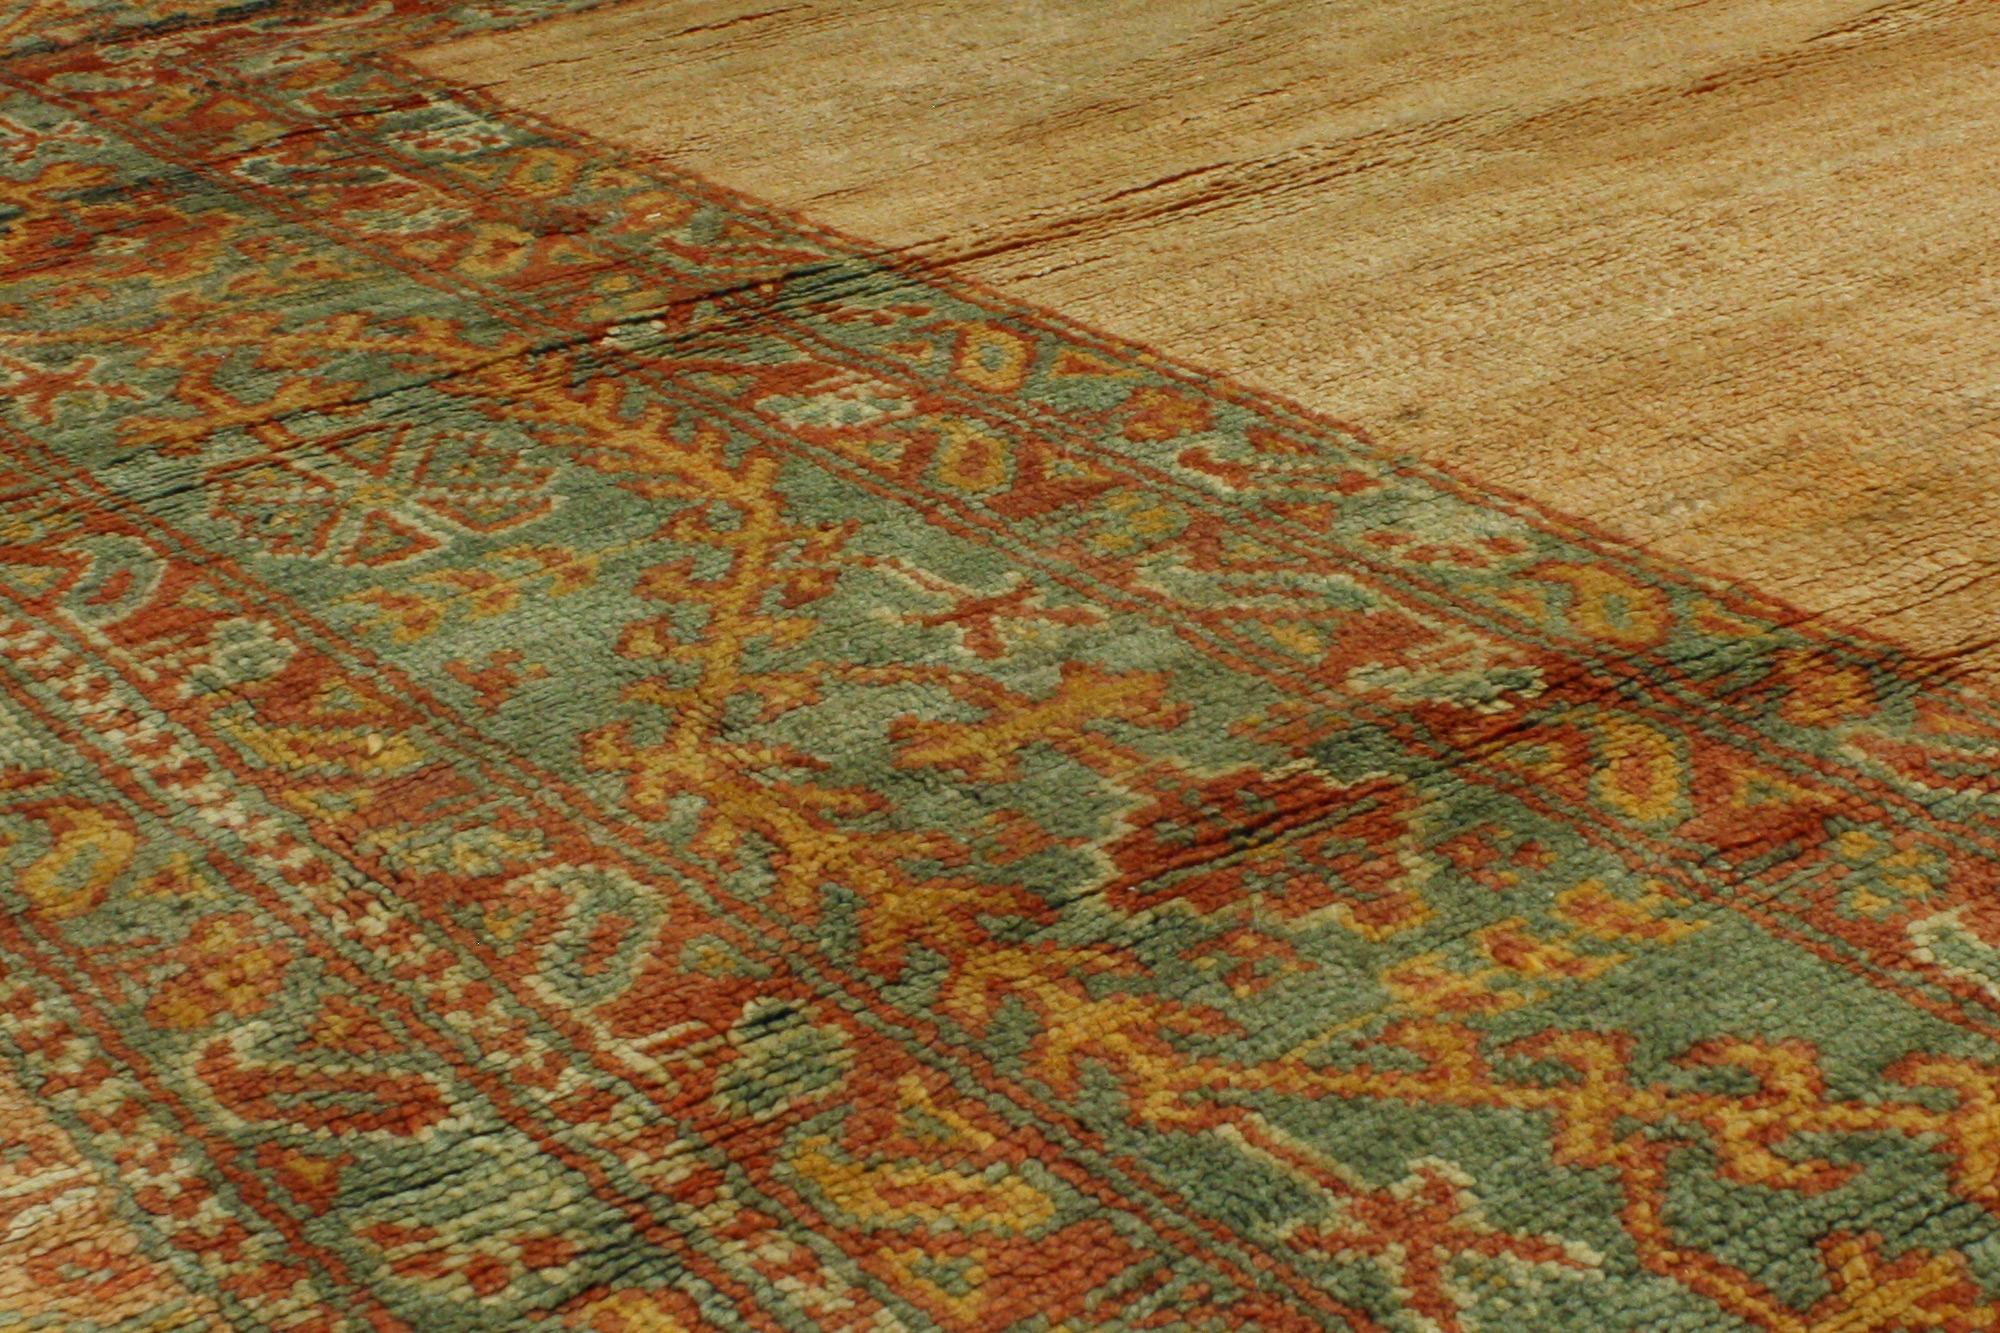 19th Century Oversized Antique Turkish Oushak Rug, Hotel Lobby Size Carpet For Sale